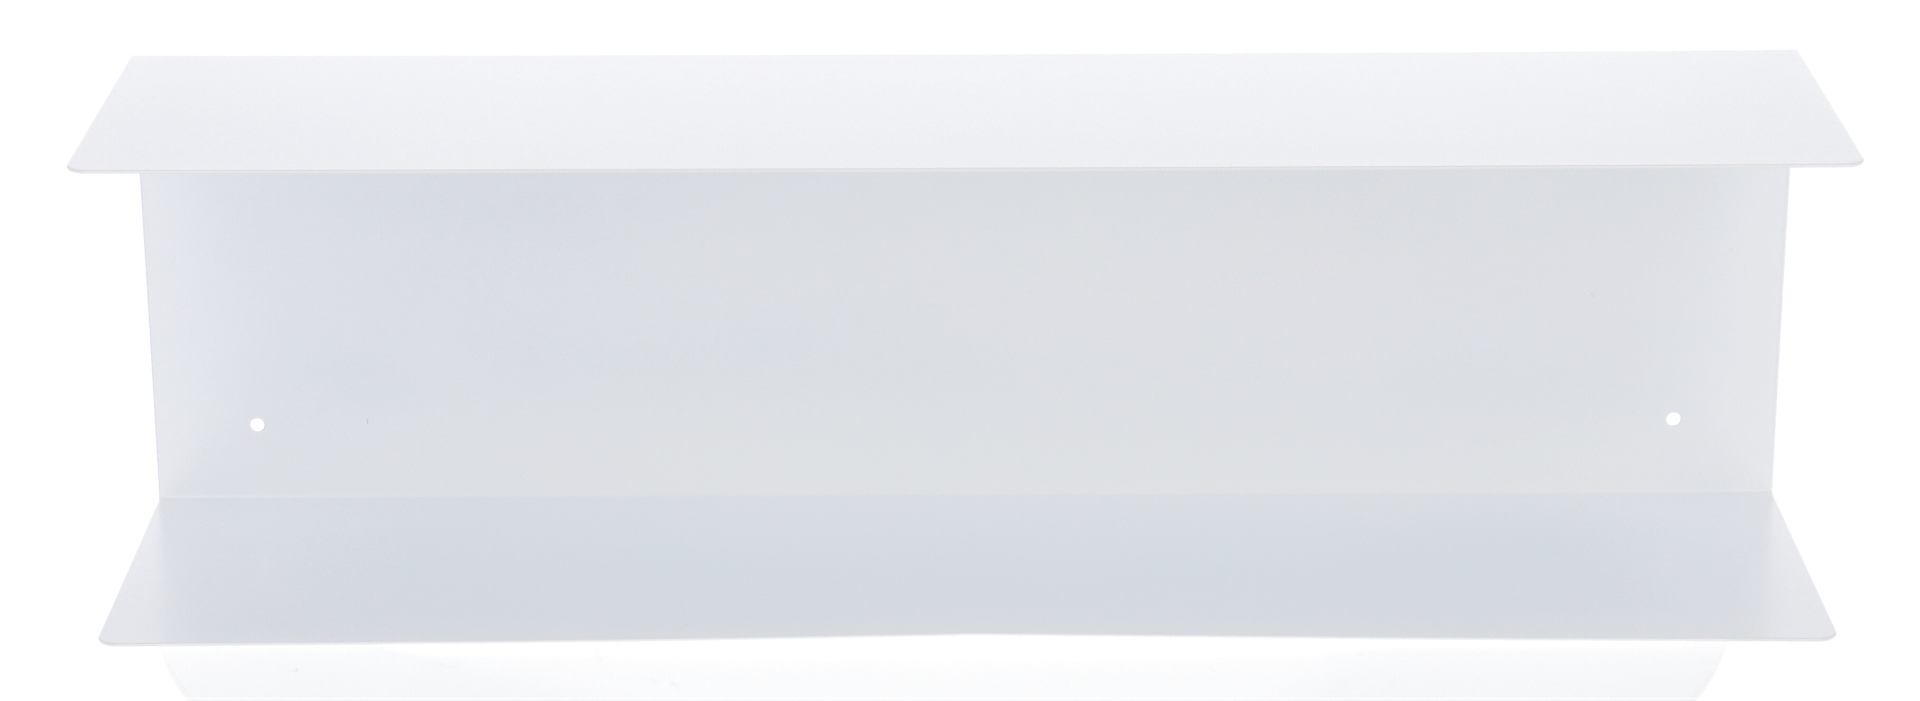 Das Wandregal Fleur wurde aus Metall gefertigt und hat einen weißen Farbton. Die Breite beträgt 80 cm. Das Design ist schlicht aber auch modern. Das Regal ist ein Produkt der Marke Jan Kurtz.